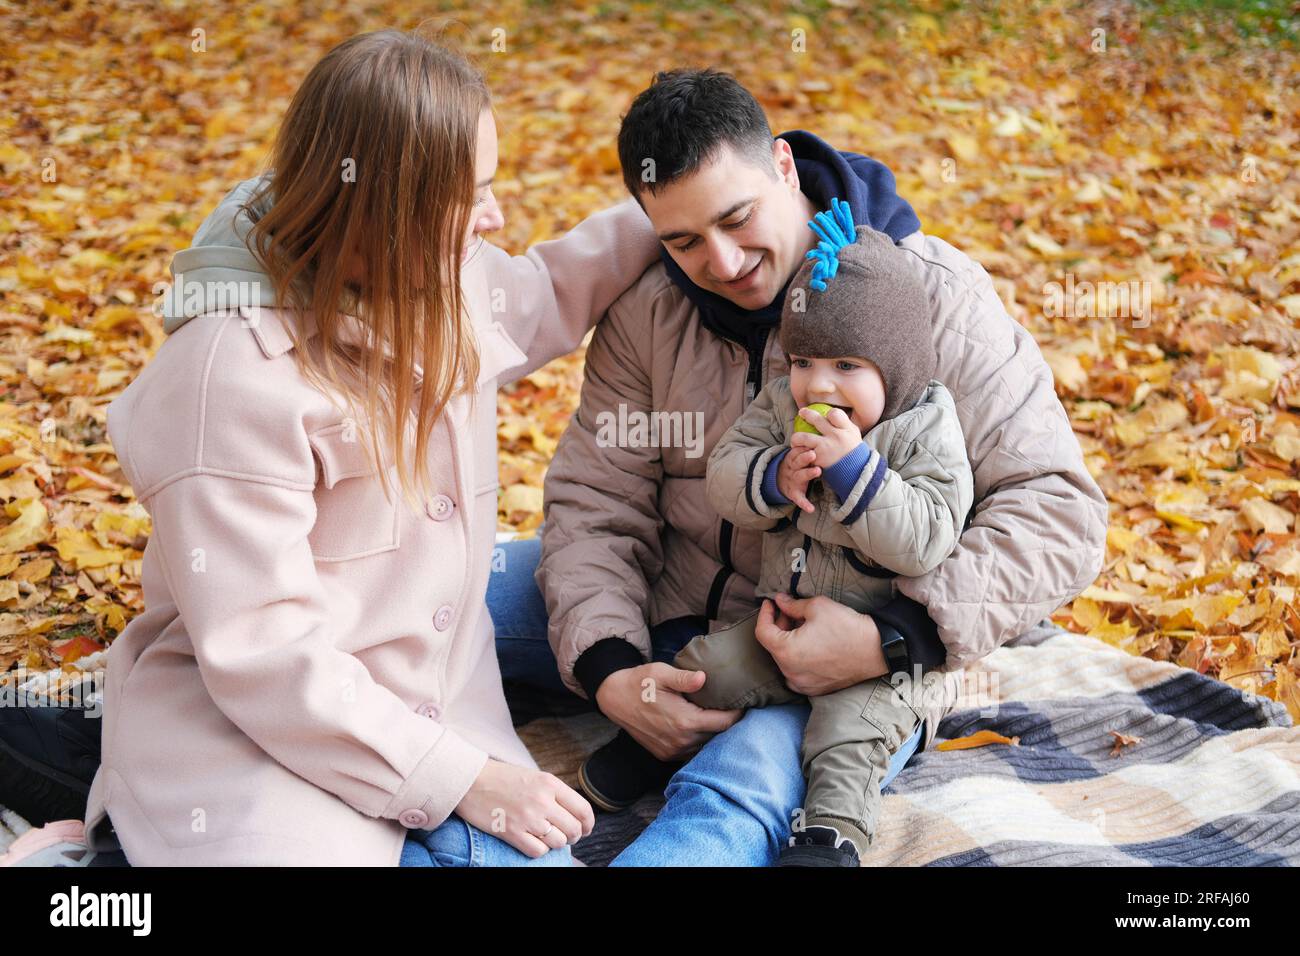 Familienwochenende. Junge Eltern und ihr kleiner Sohn verbringen Zeit zusammen im Herbstpark und sitzen auf einer Decke. Horizontales Foto Stockfoto